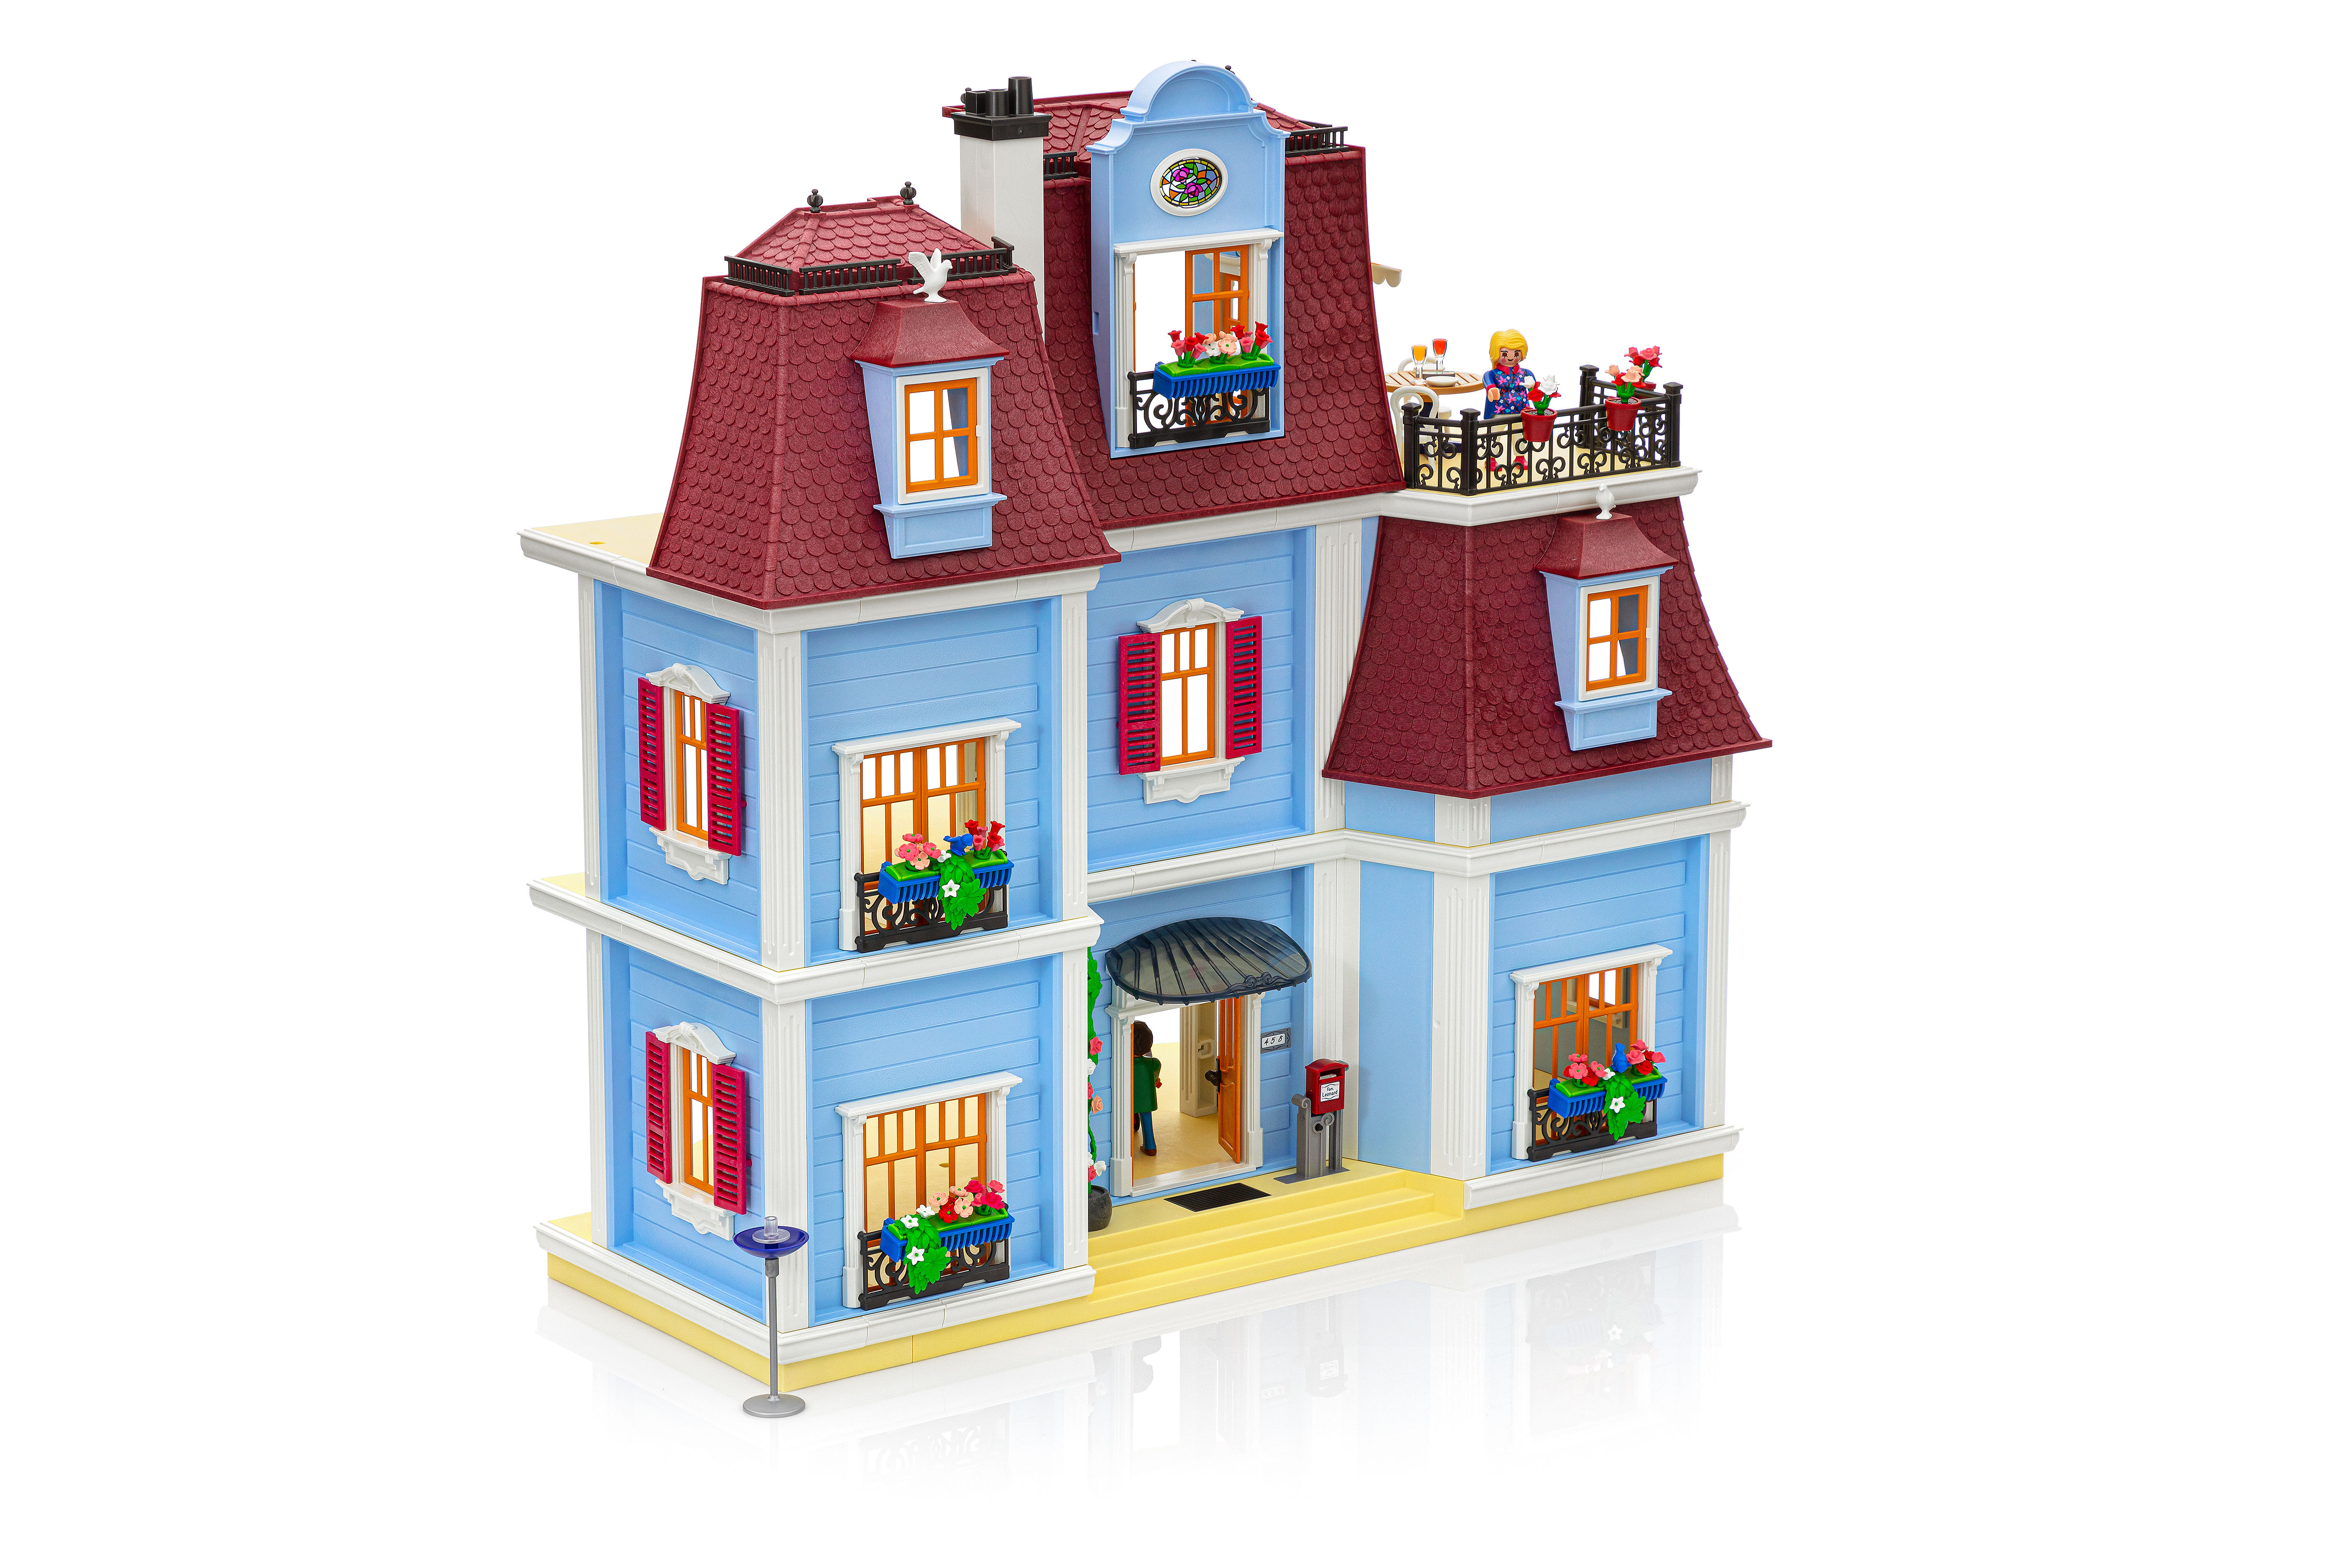 Playmobil - Grande Maison avec Nombreux Personnages et Accessoires